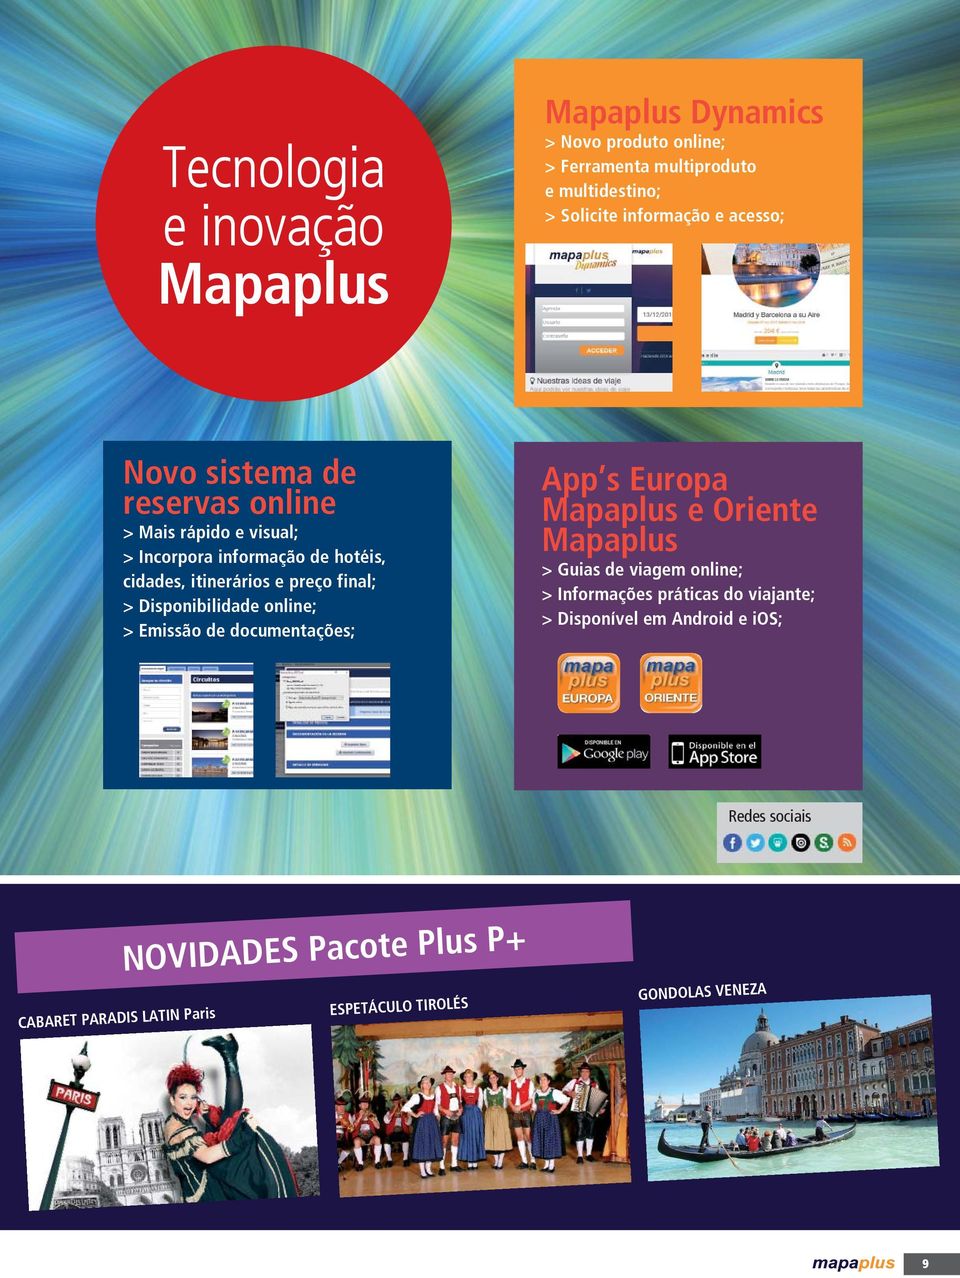 Disponibilidade online; > Emissão de documentações; App s Europa Mapaplus e Oriente Mapaplus > Guias de viagem online; > Informações